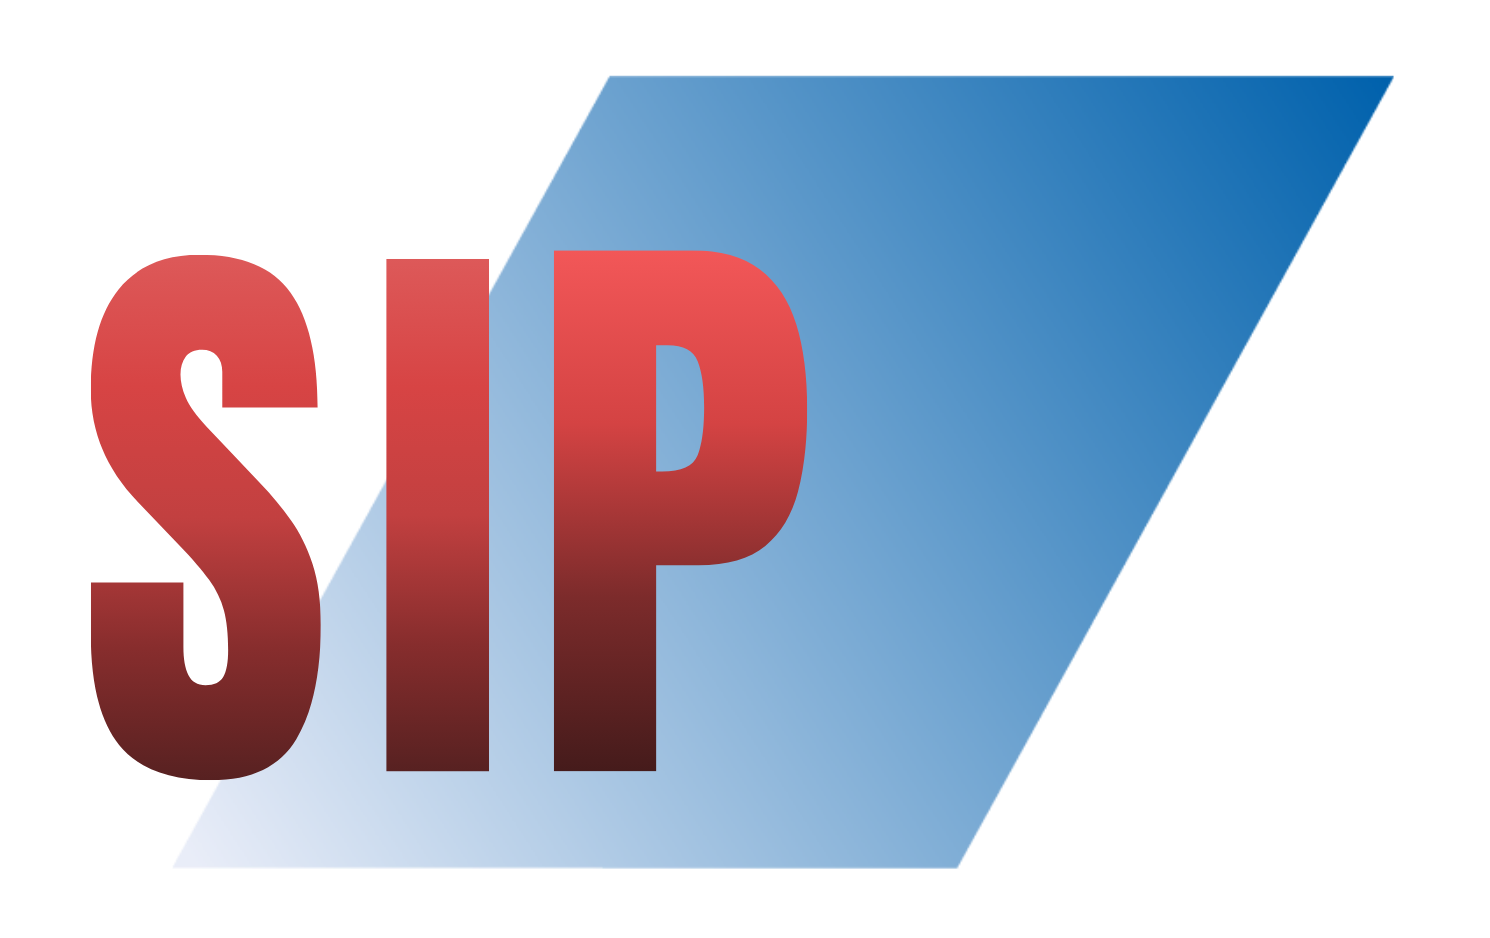 IP Telephony Signalling Protocol